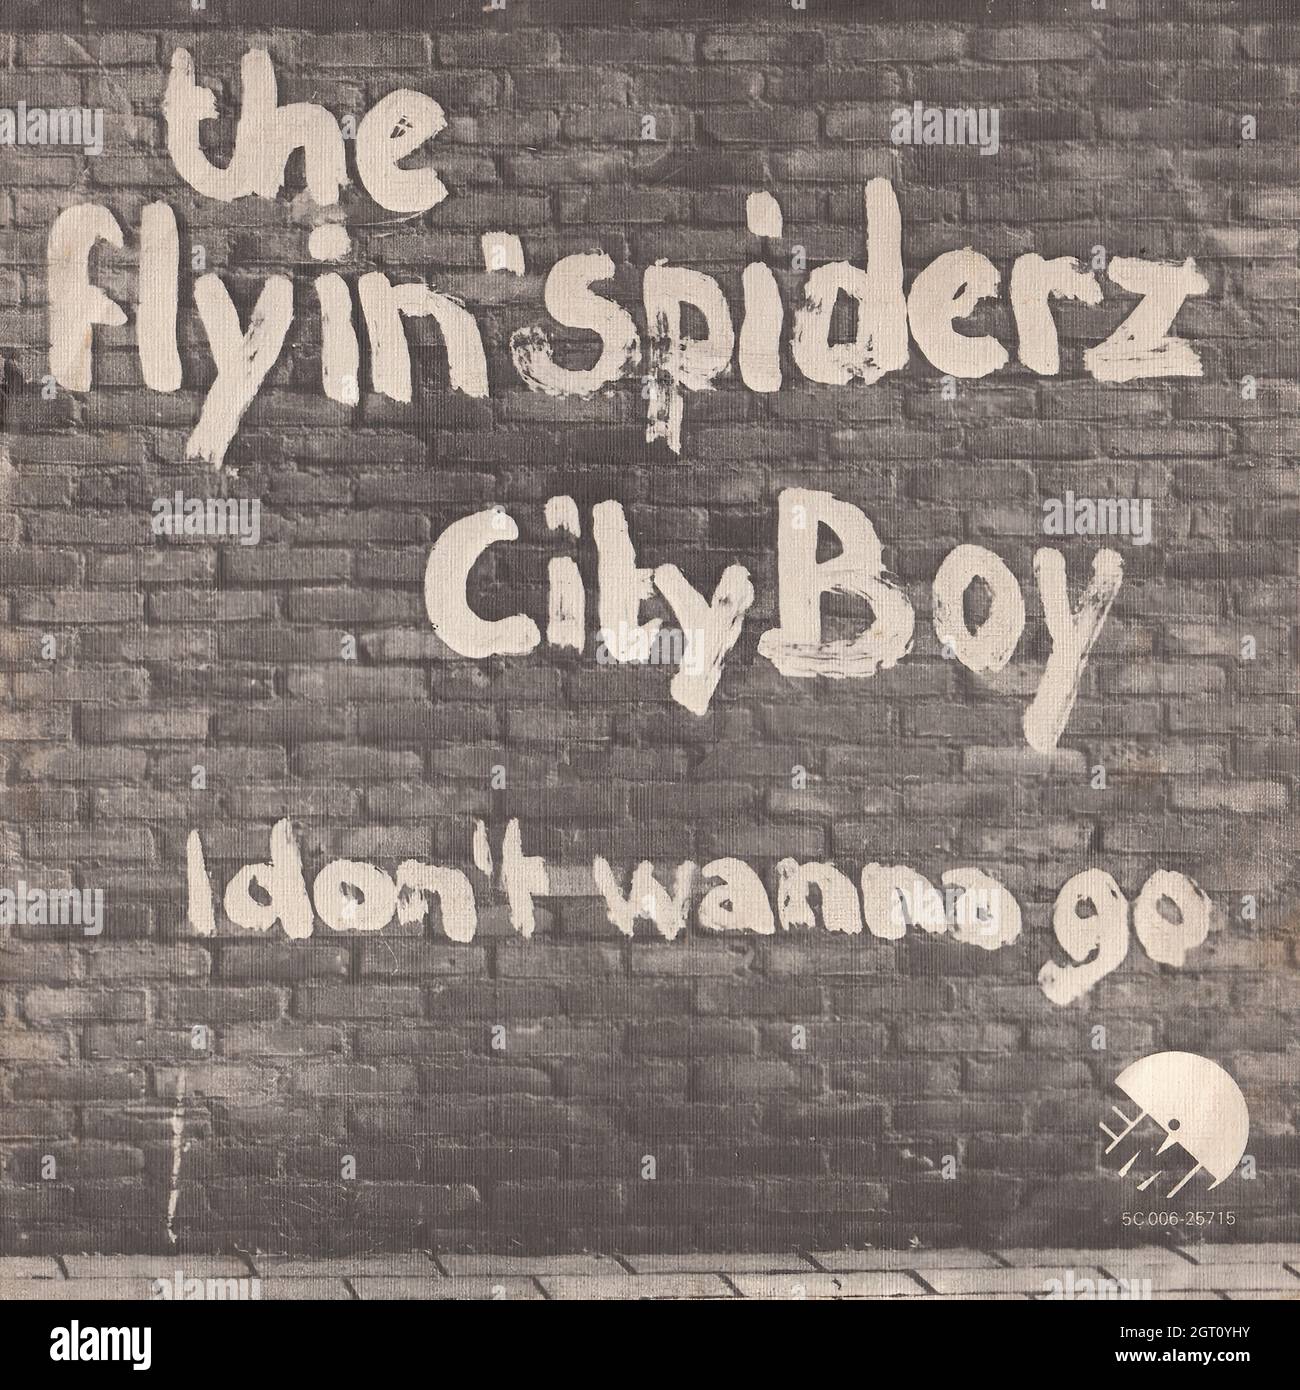 The Flyin' Spiderz - City boy - No quiero ir 45rpm - Vintage Vinyl Record Cover Foto de stock